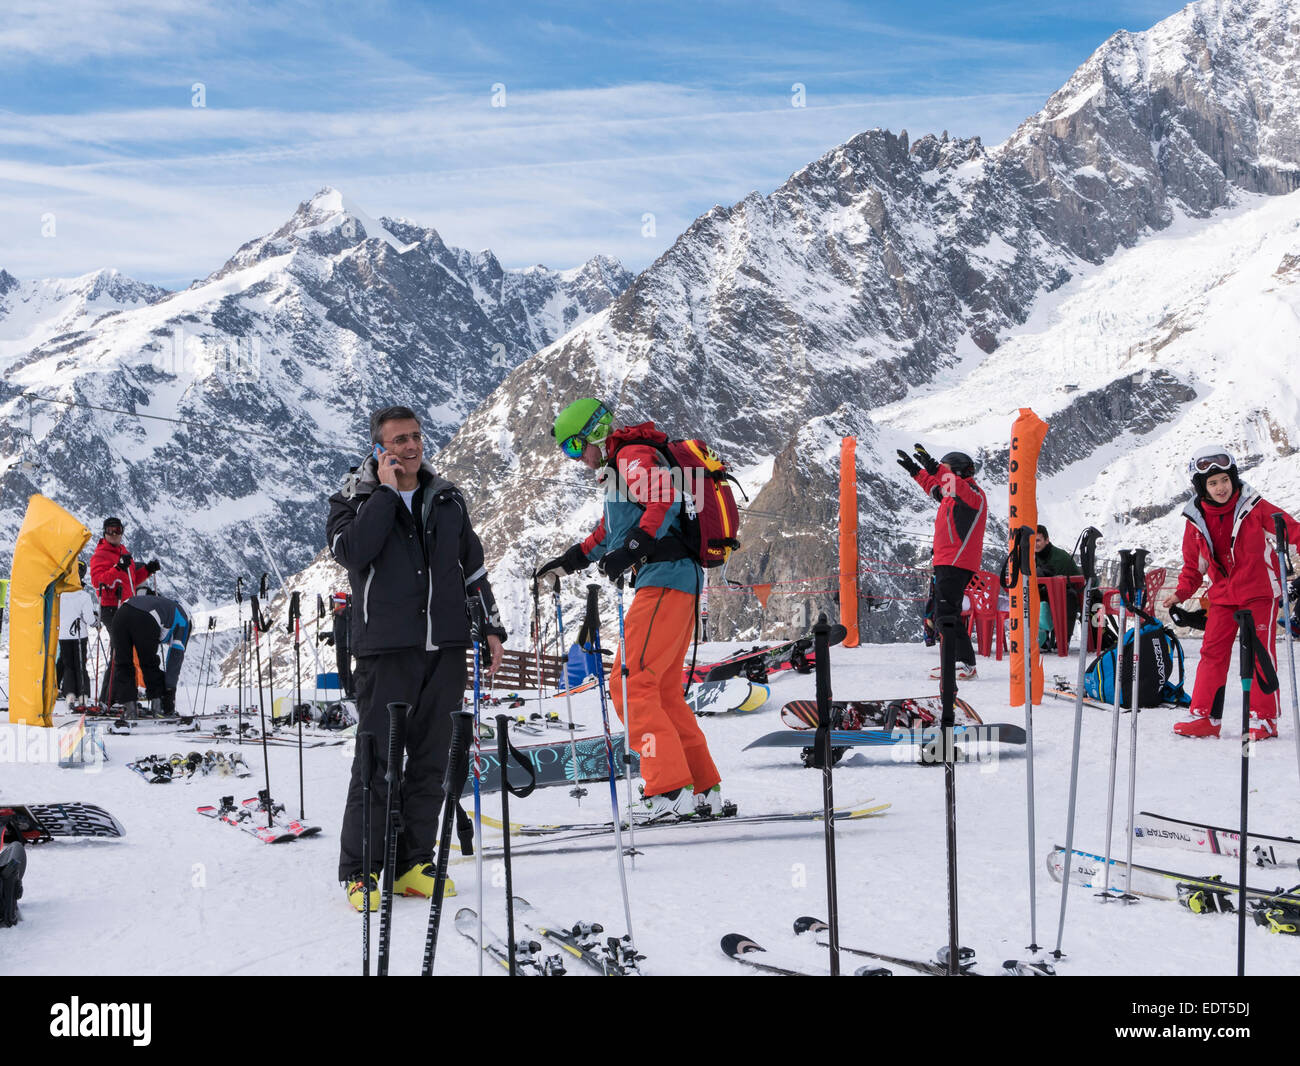 Gli sci e gli sciatori sulle piste innevate con il massiccio del Monte Bianco nelle Alpi Graian dietro. Courmayeur, Valle d'Aosta, Italia, Europa Foto Stock